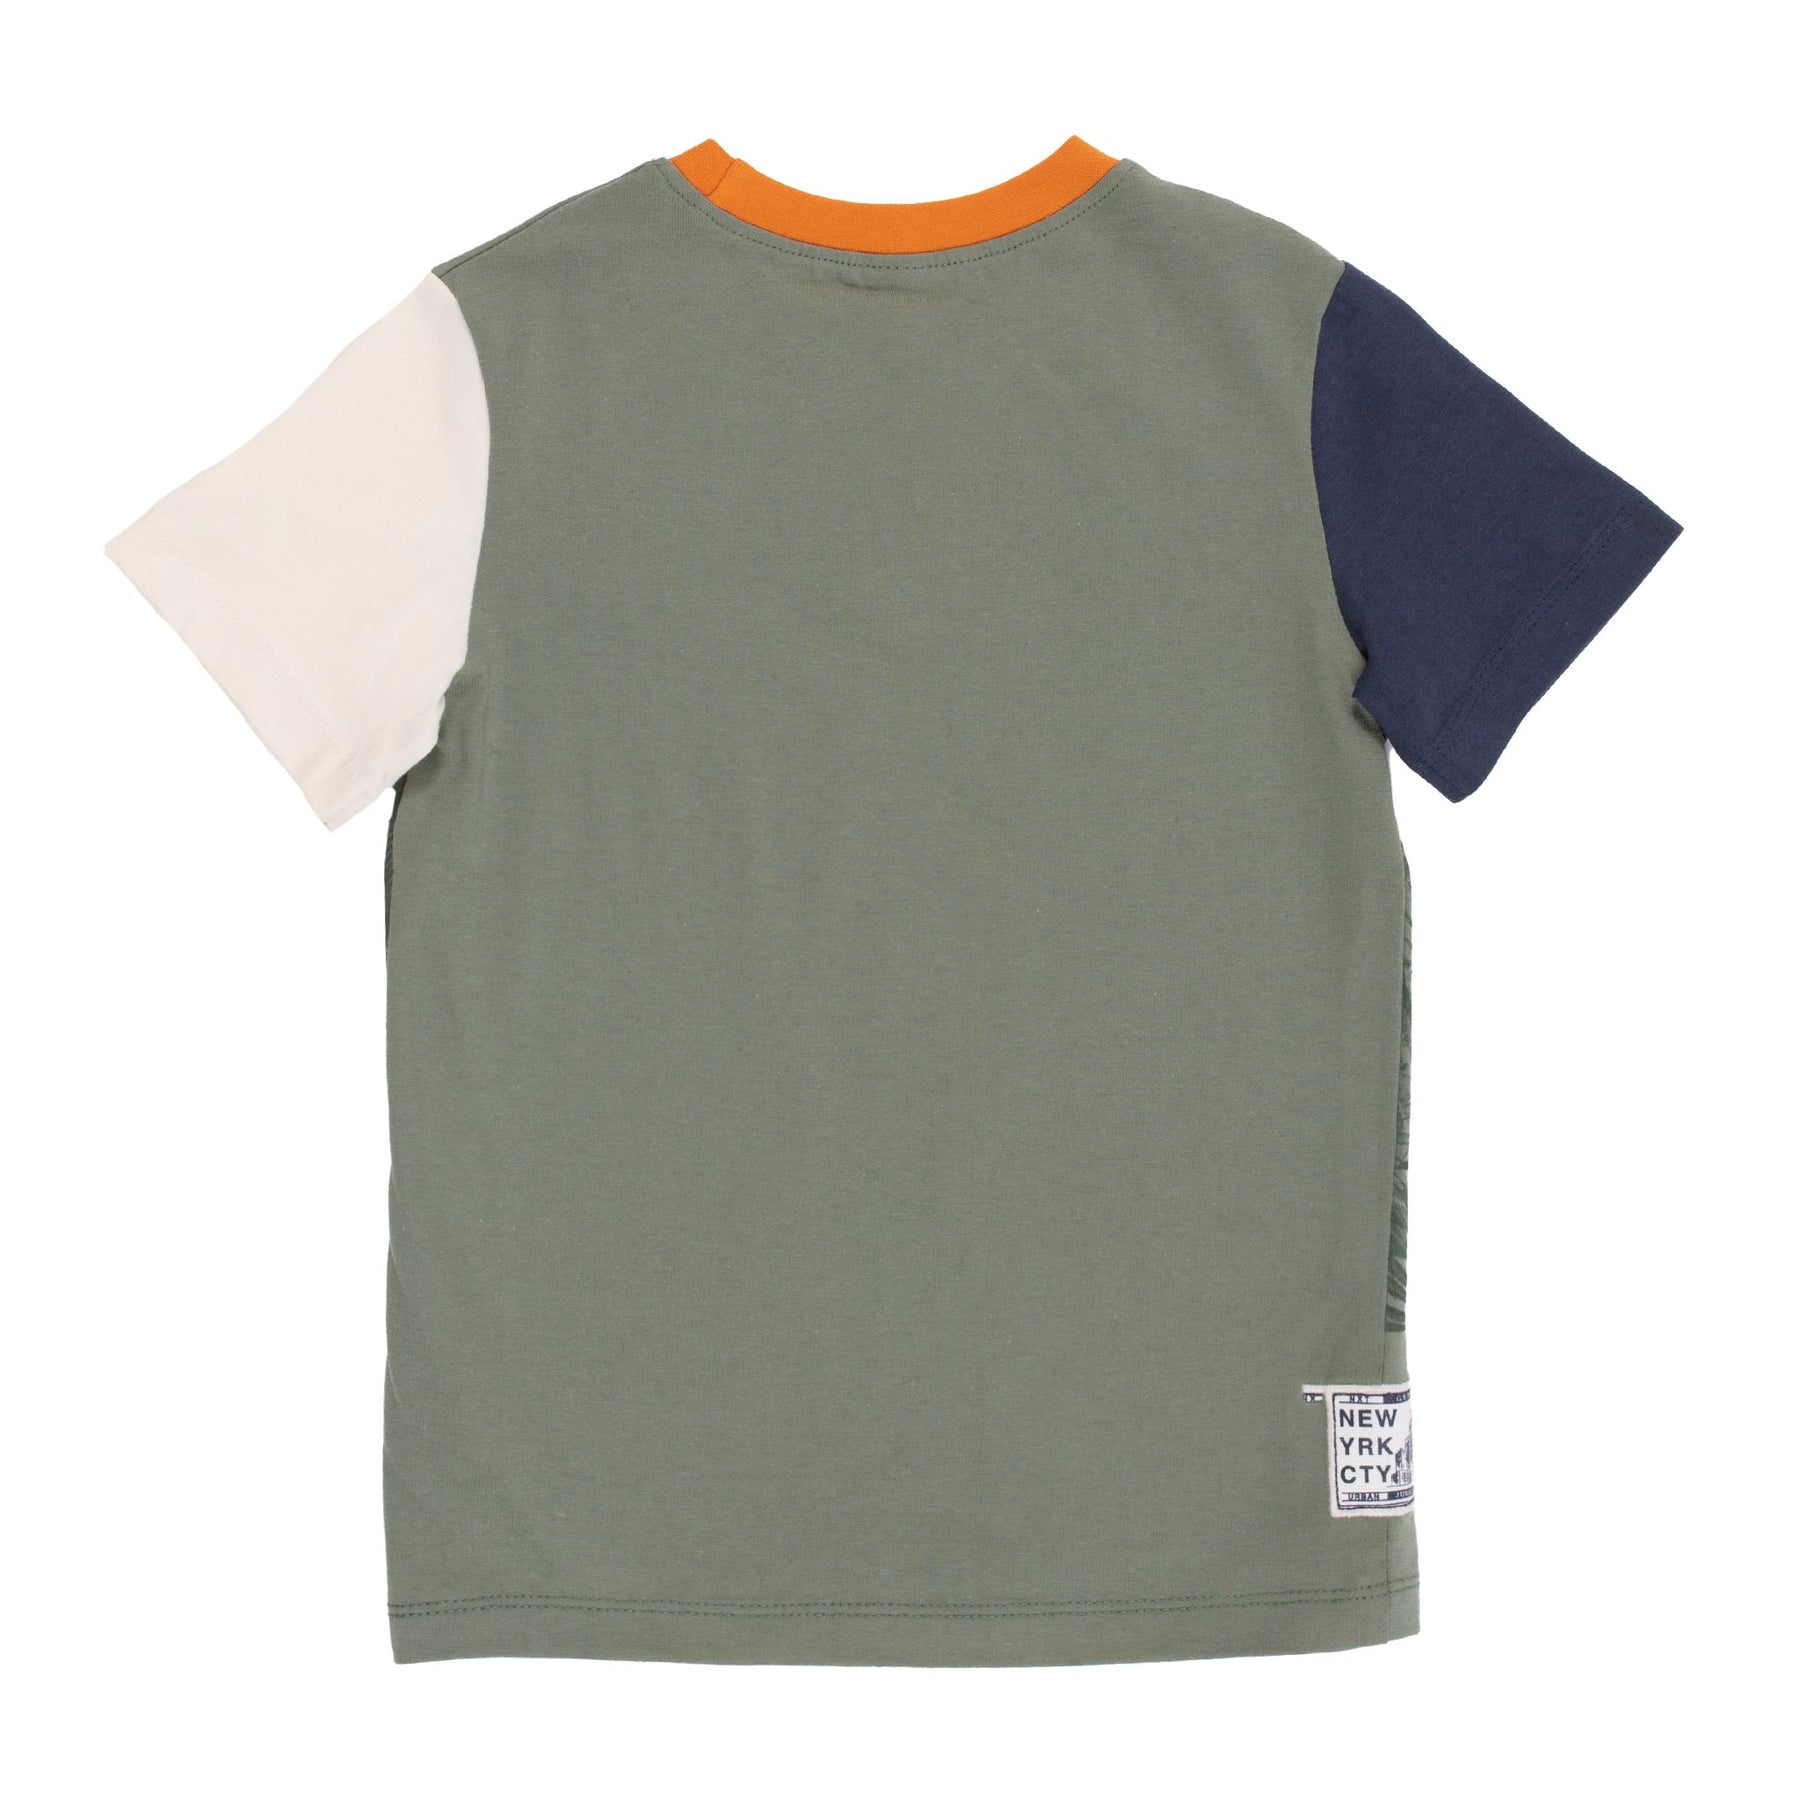 Chandail manches courtes pour enfant garçon par Nanö | S2203-09 Vert | Boutique Flos, vêtements pour bébés et enfants